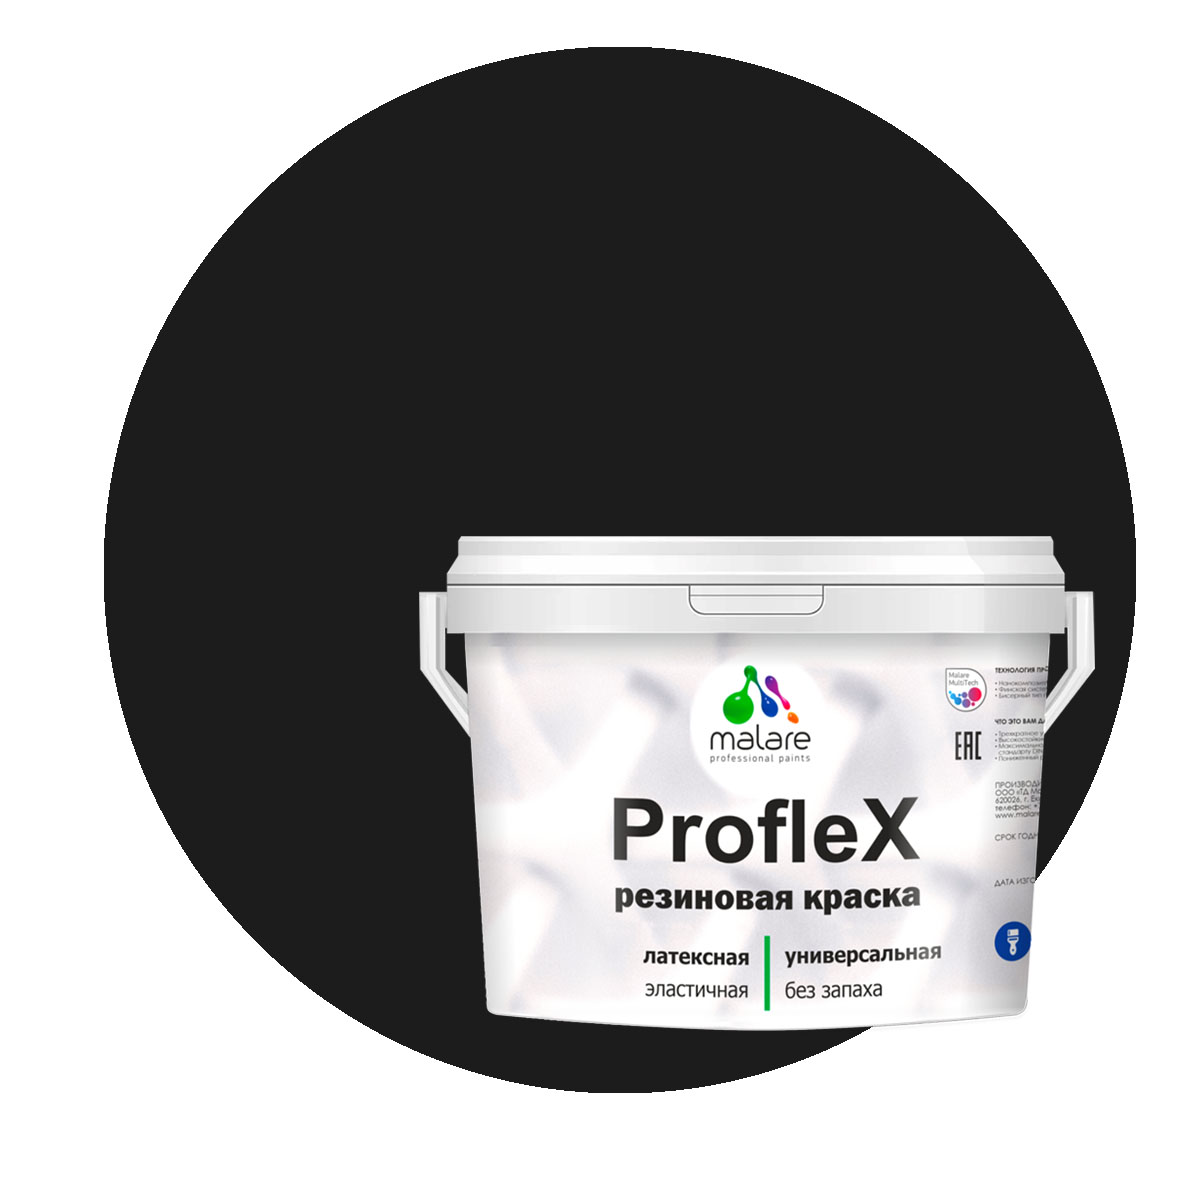 Краска Malare ProfleX для фасадов, интерьера, мебели, черный, 1 кг. щелочной очиститель фасадов зданий plex